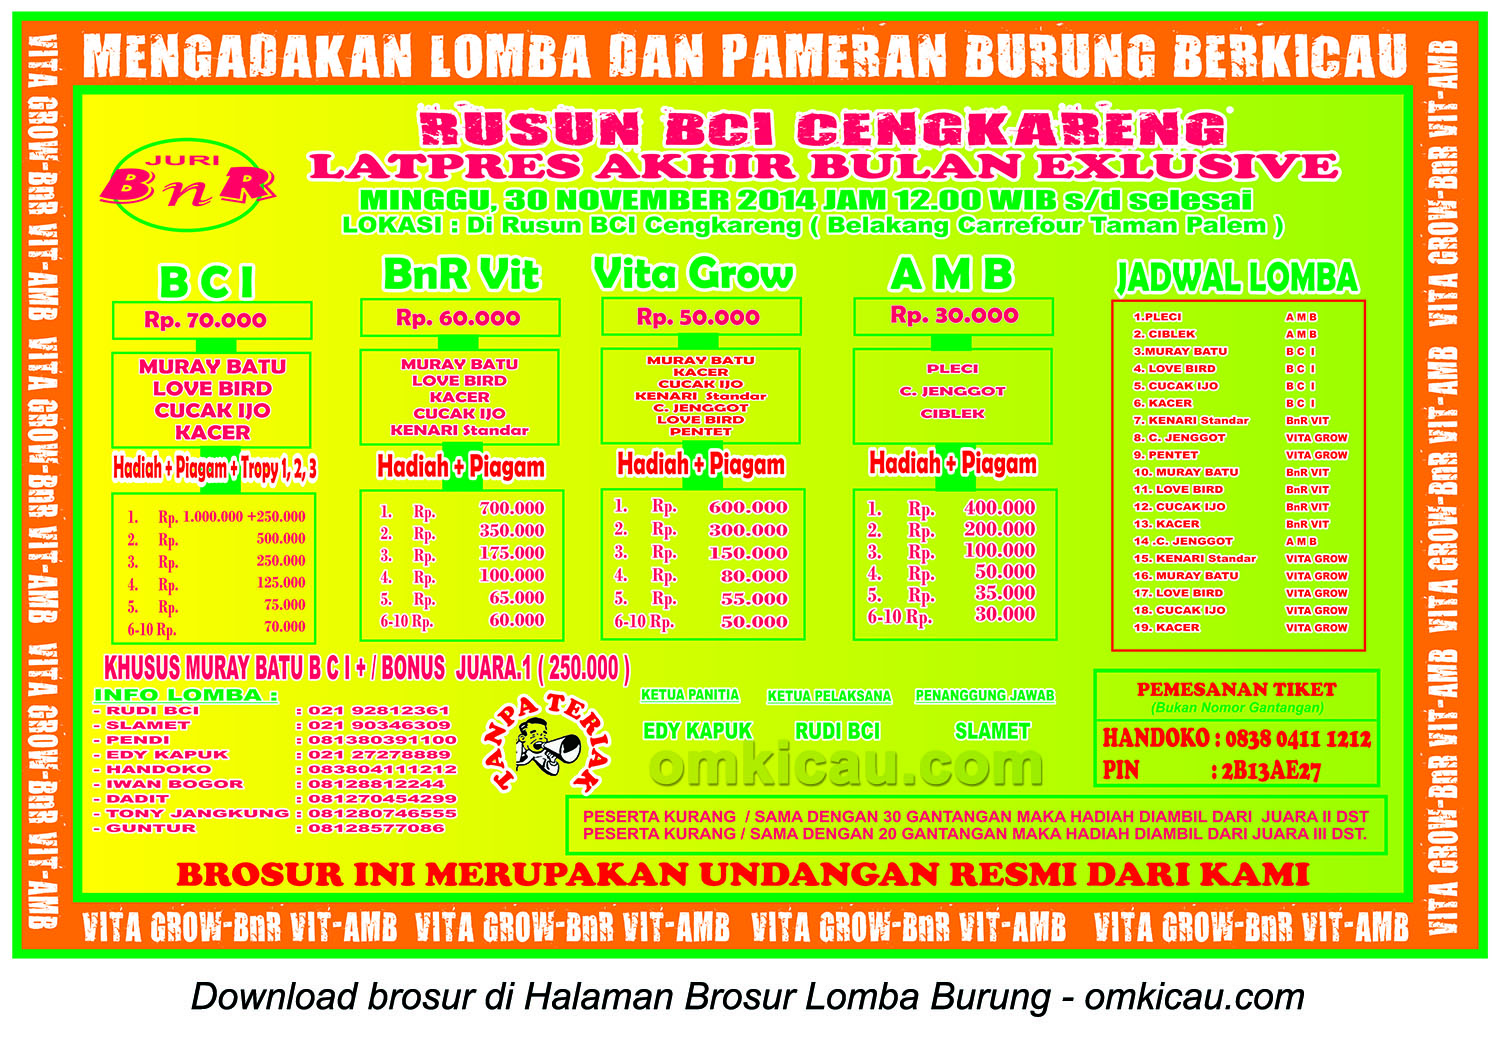 Brosur Latpres Akhir Bulan Rusun BCI Cengkareng, Jakarta Barat, 30 November 2014